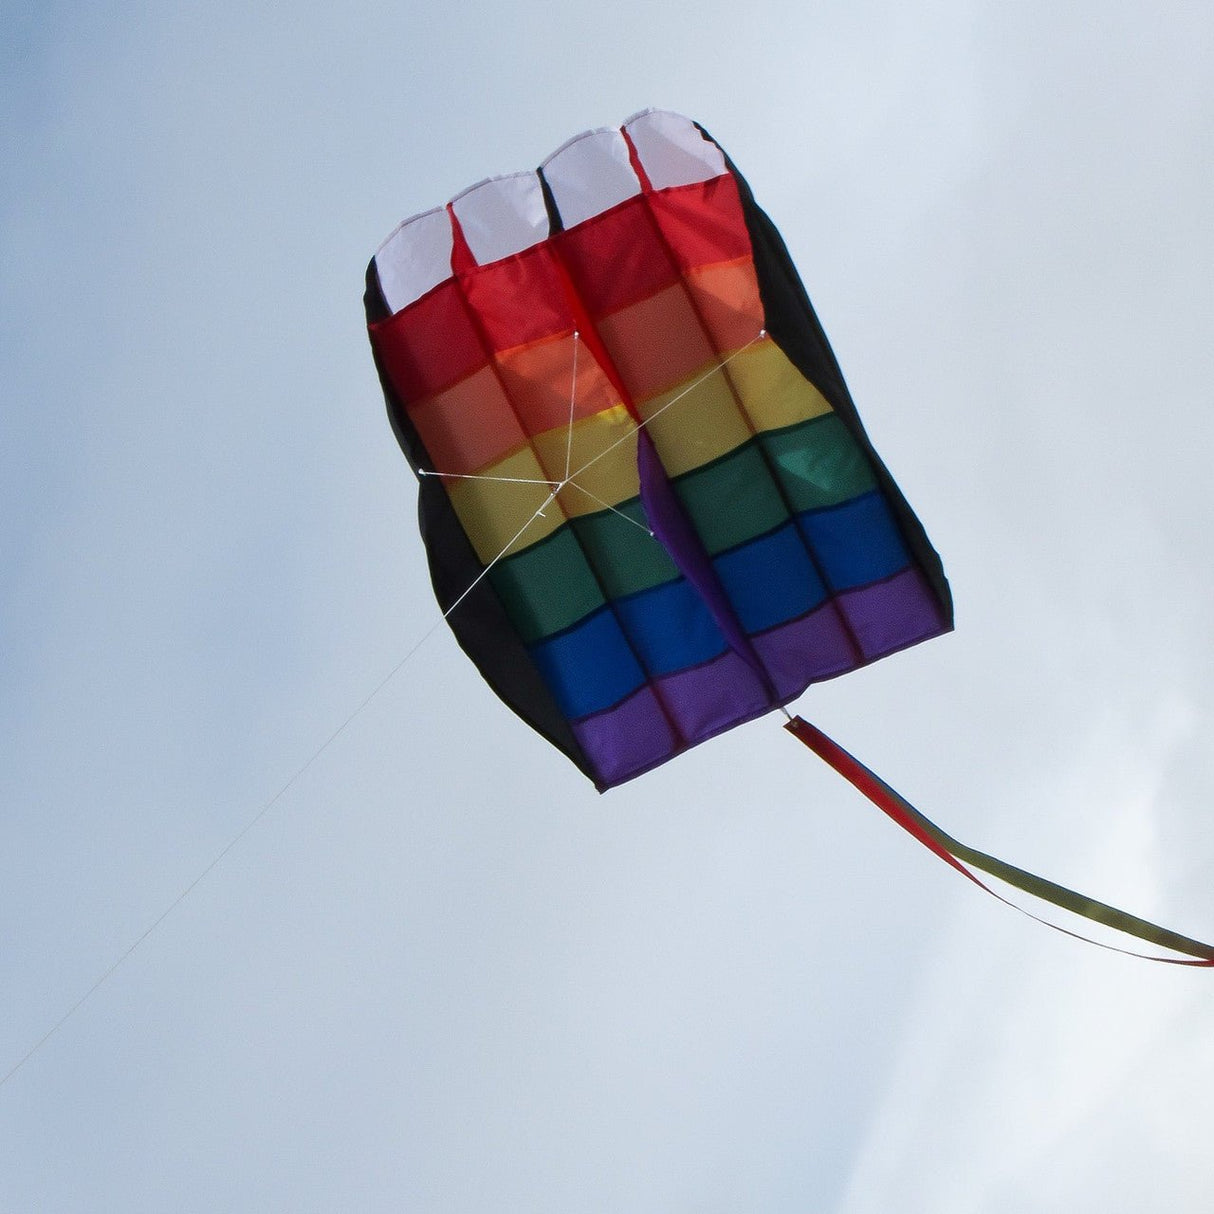 In The Breeze 5.0 Rainbow Stripes Air Foil Kite - JCS Wildlife